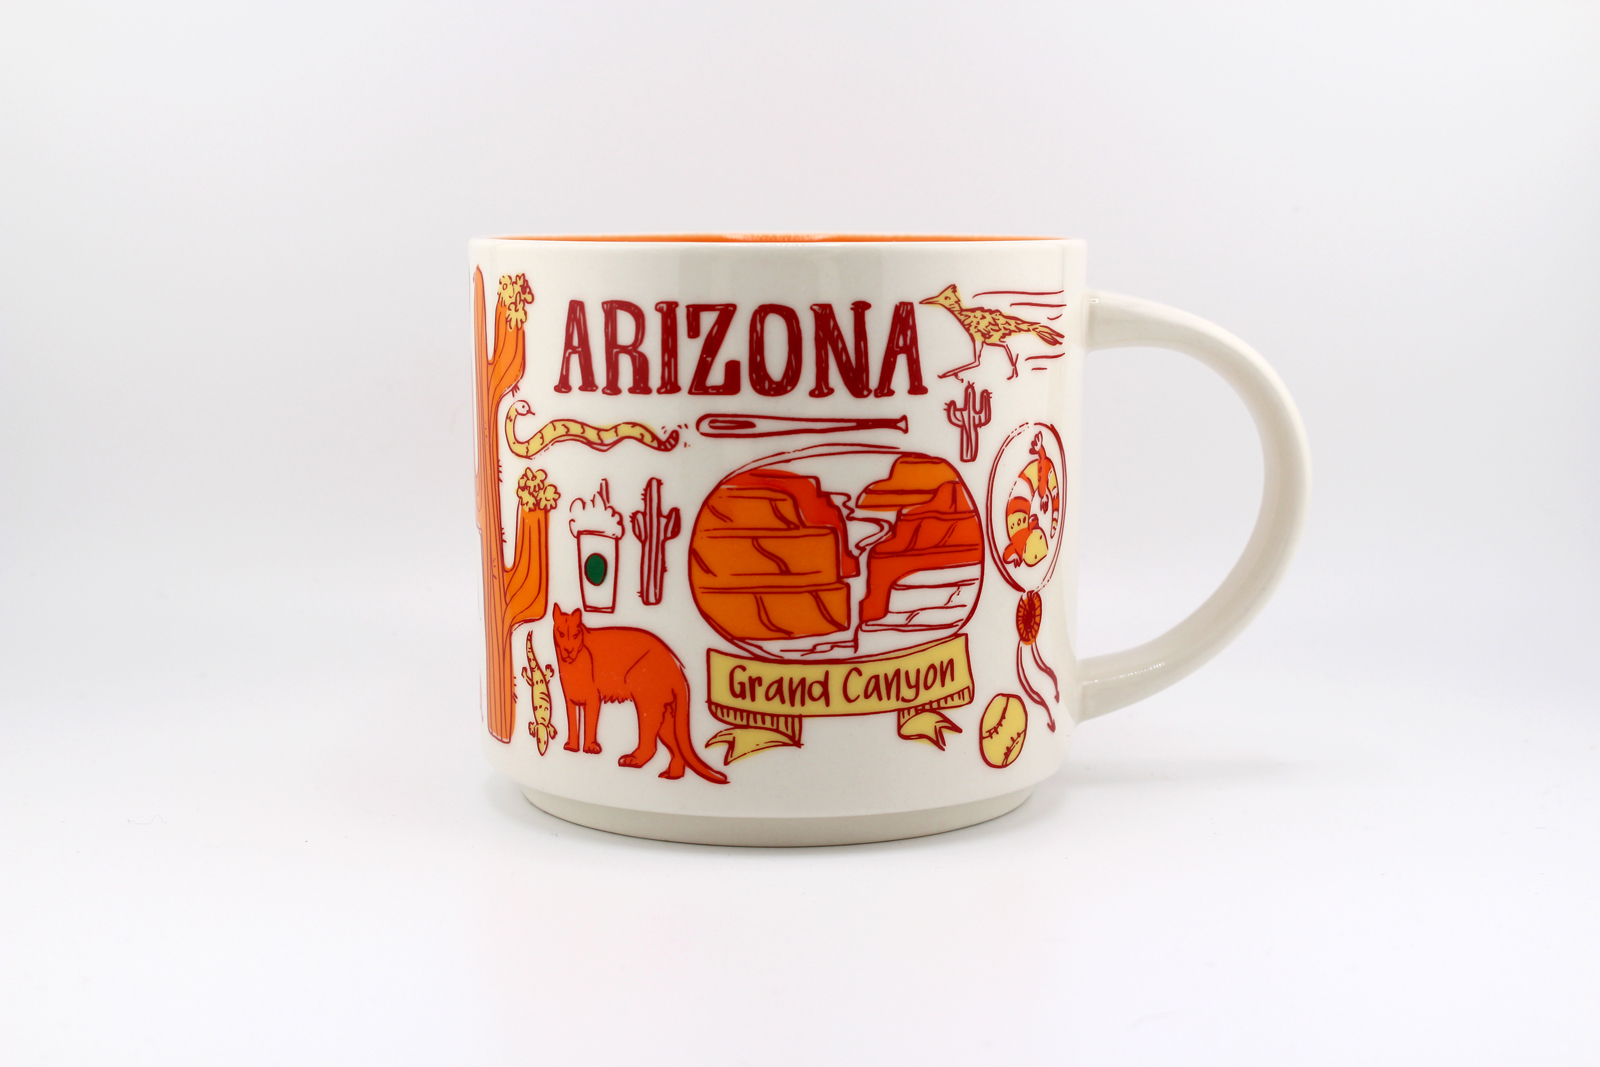 Arizona Mug: Starbucks Been There Series